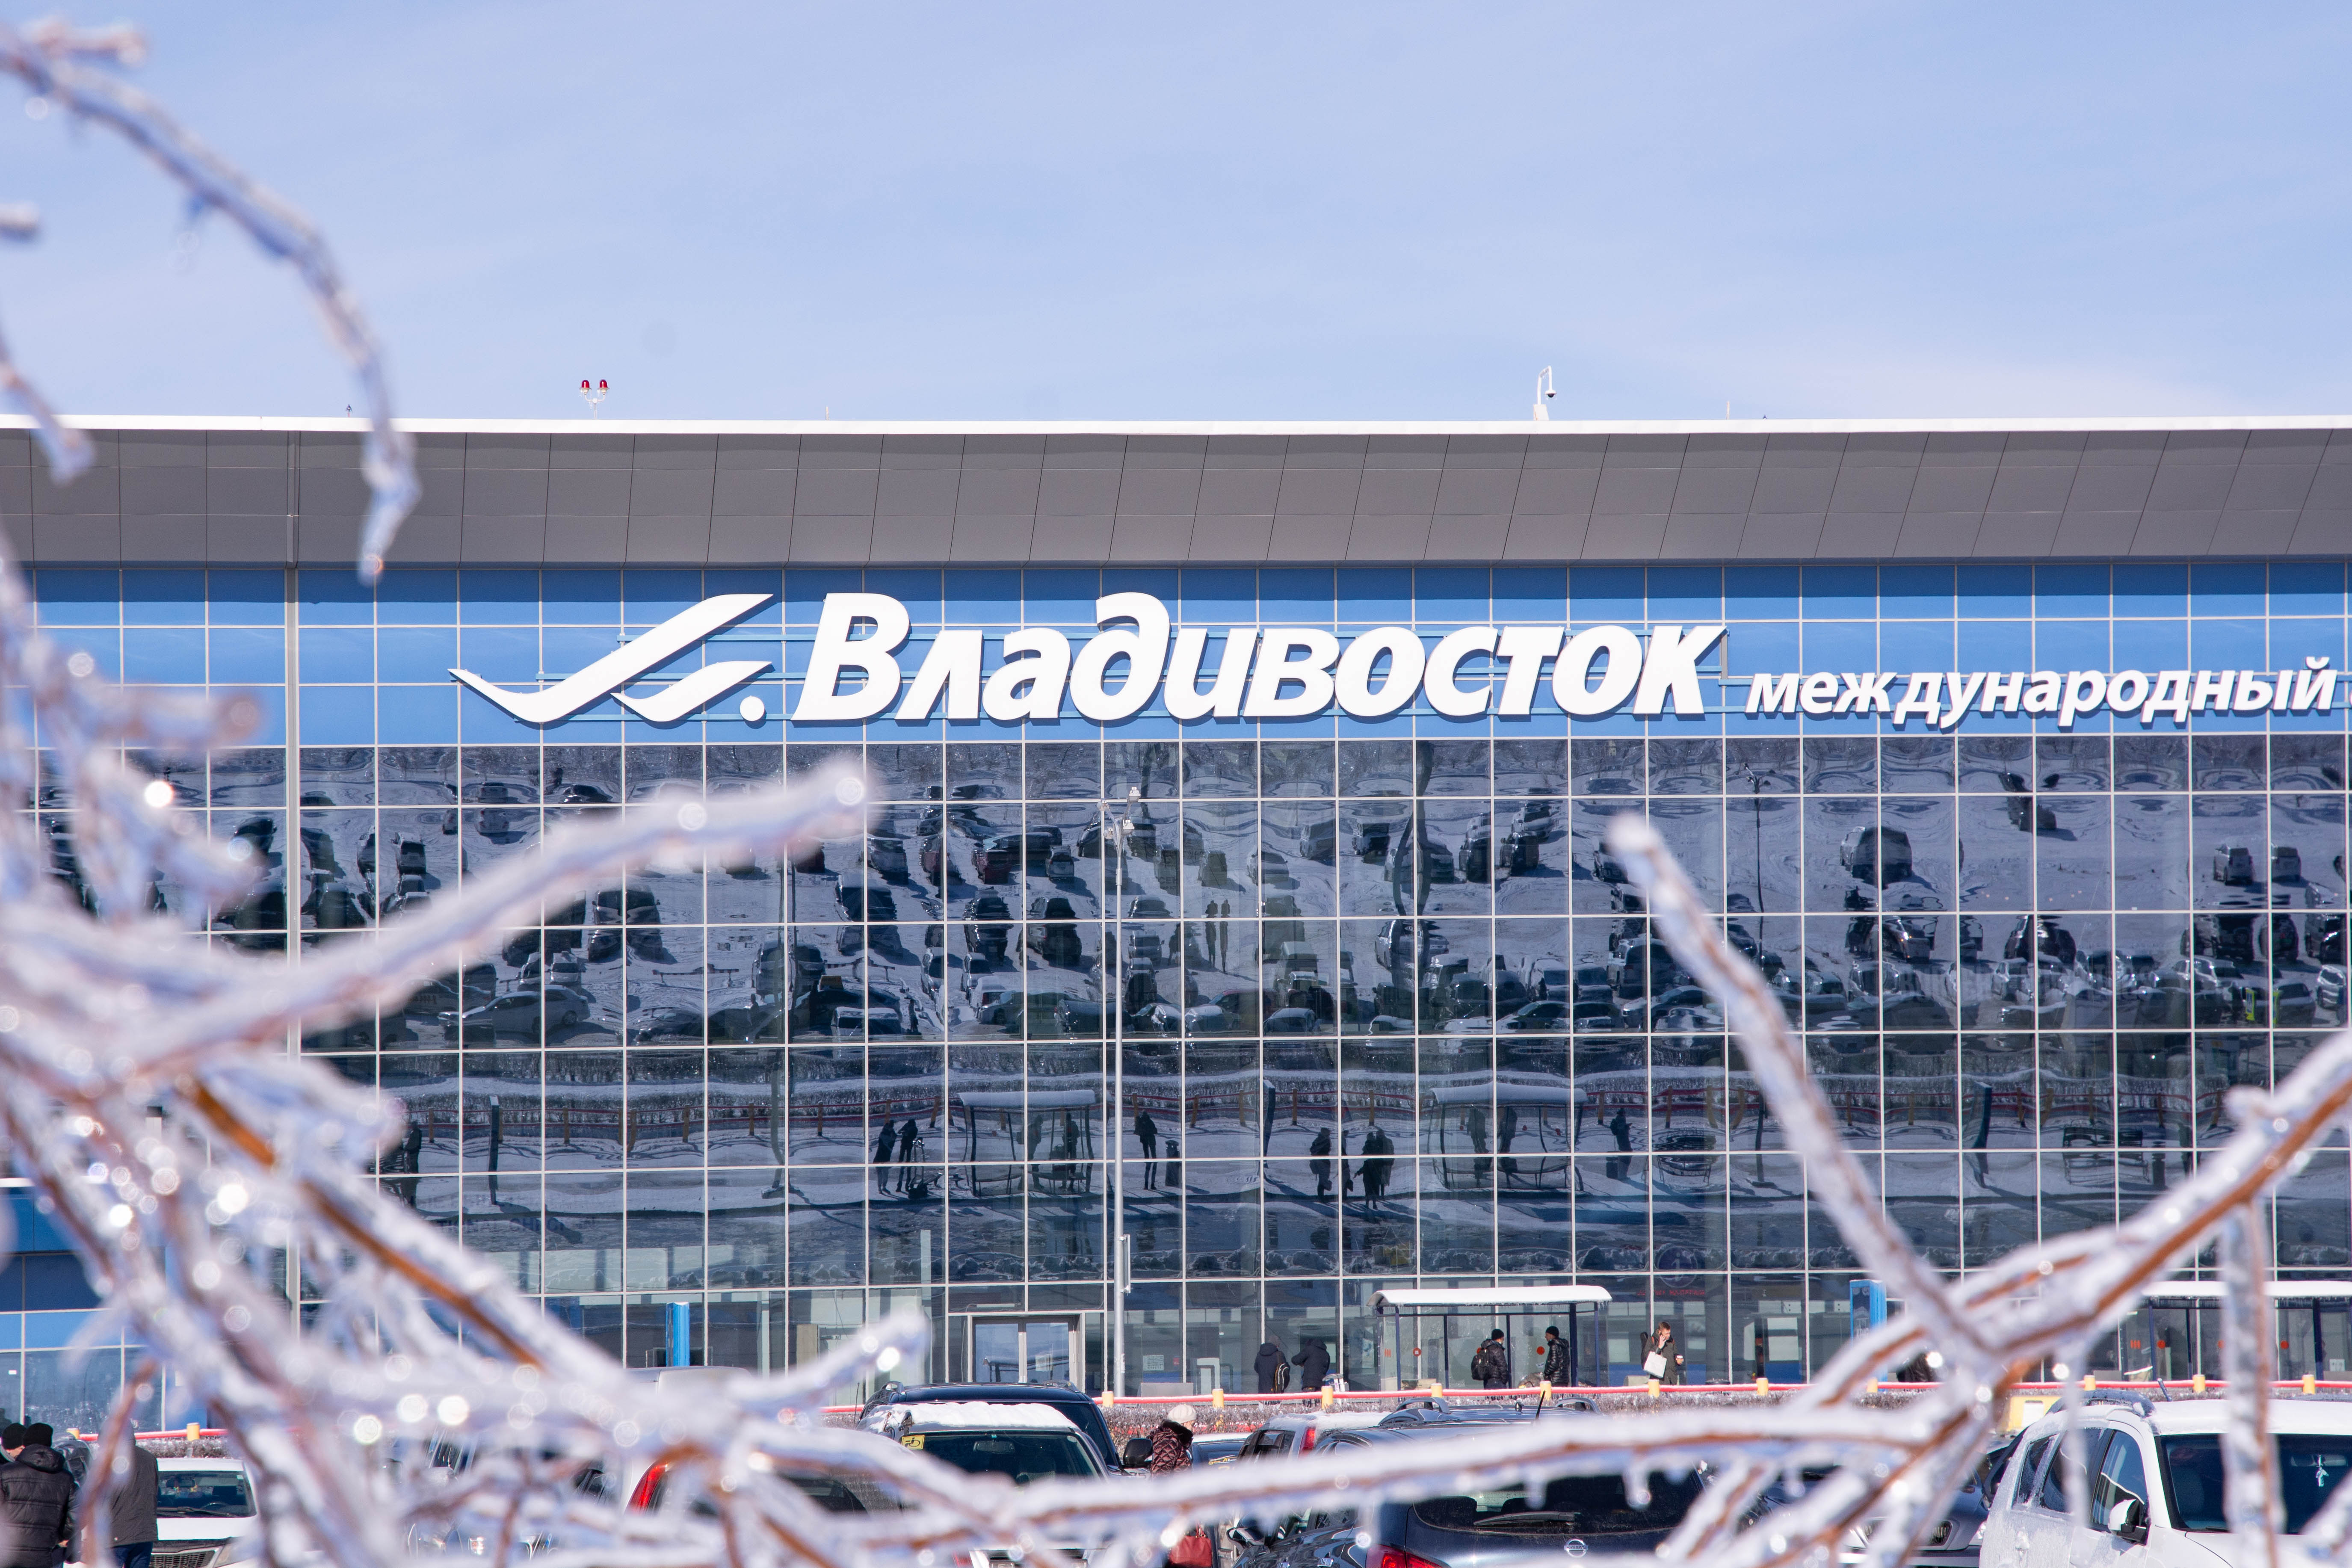 Уважаемые гости и пассажиры аэропорта! Дорогие друзья!  Международный аэропорт Владивосток от всей души поздравляет Вас с наступающим Новым годом!